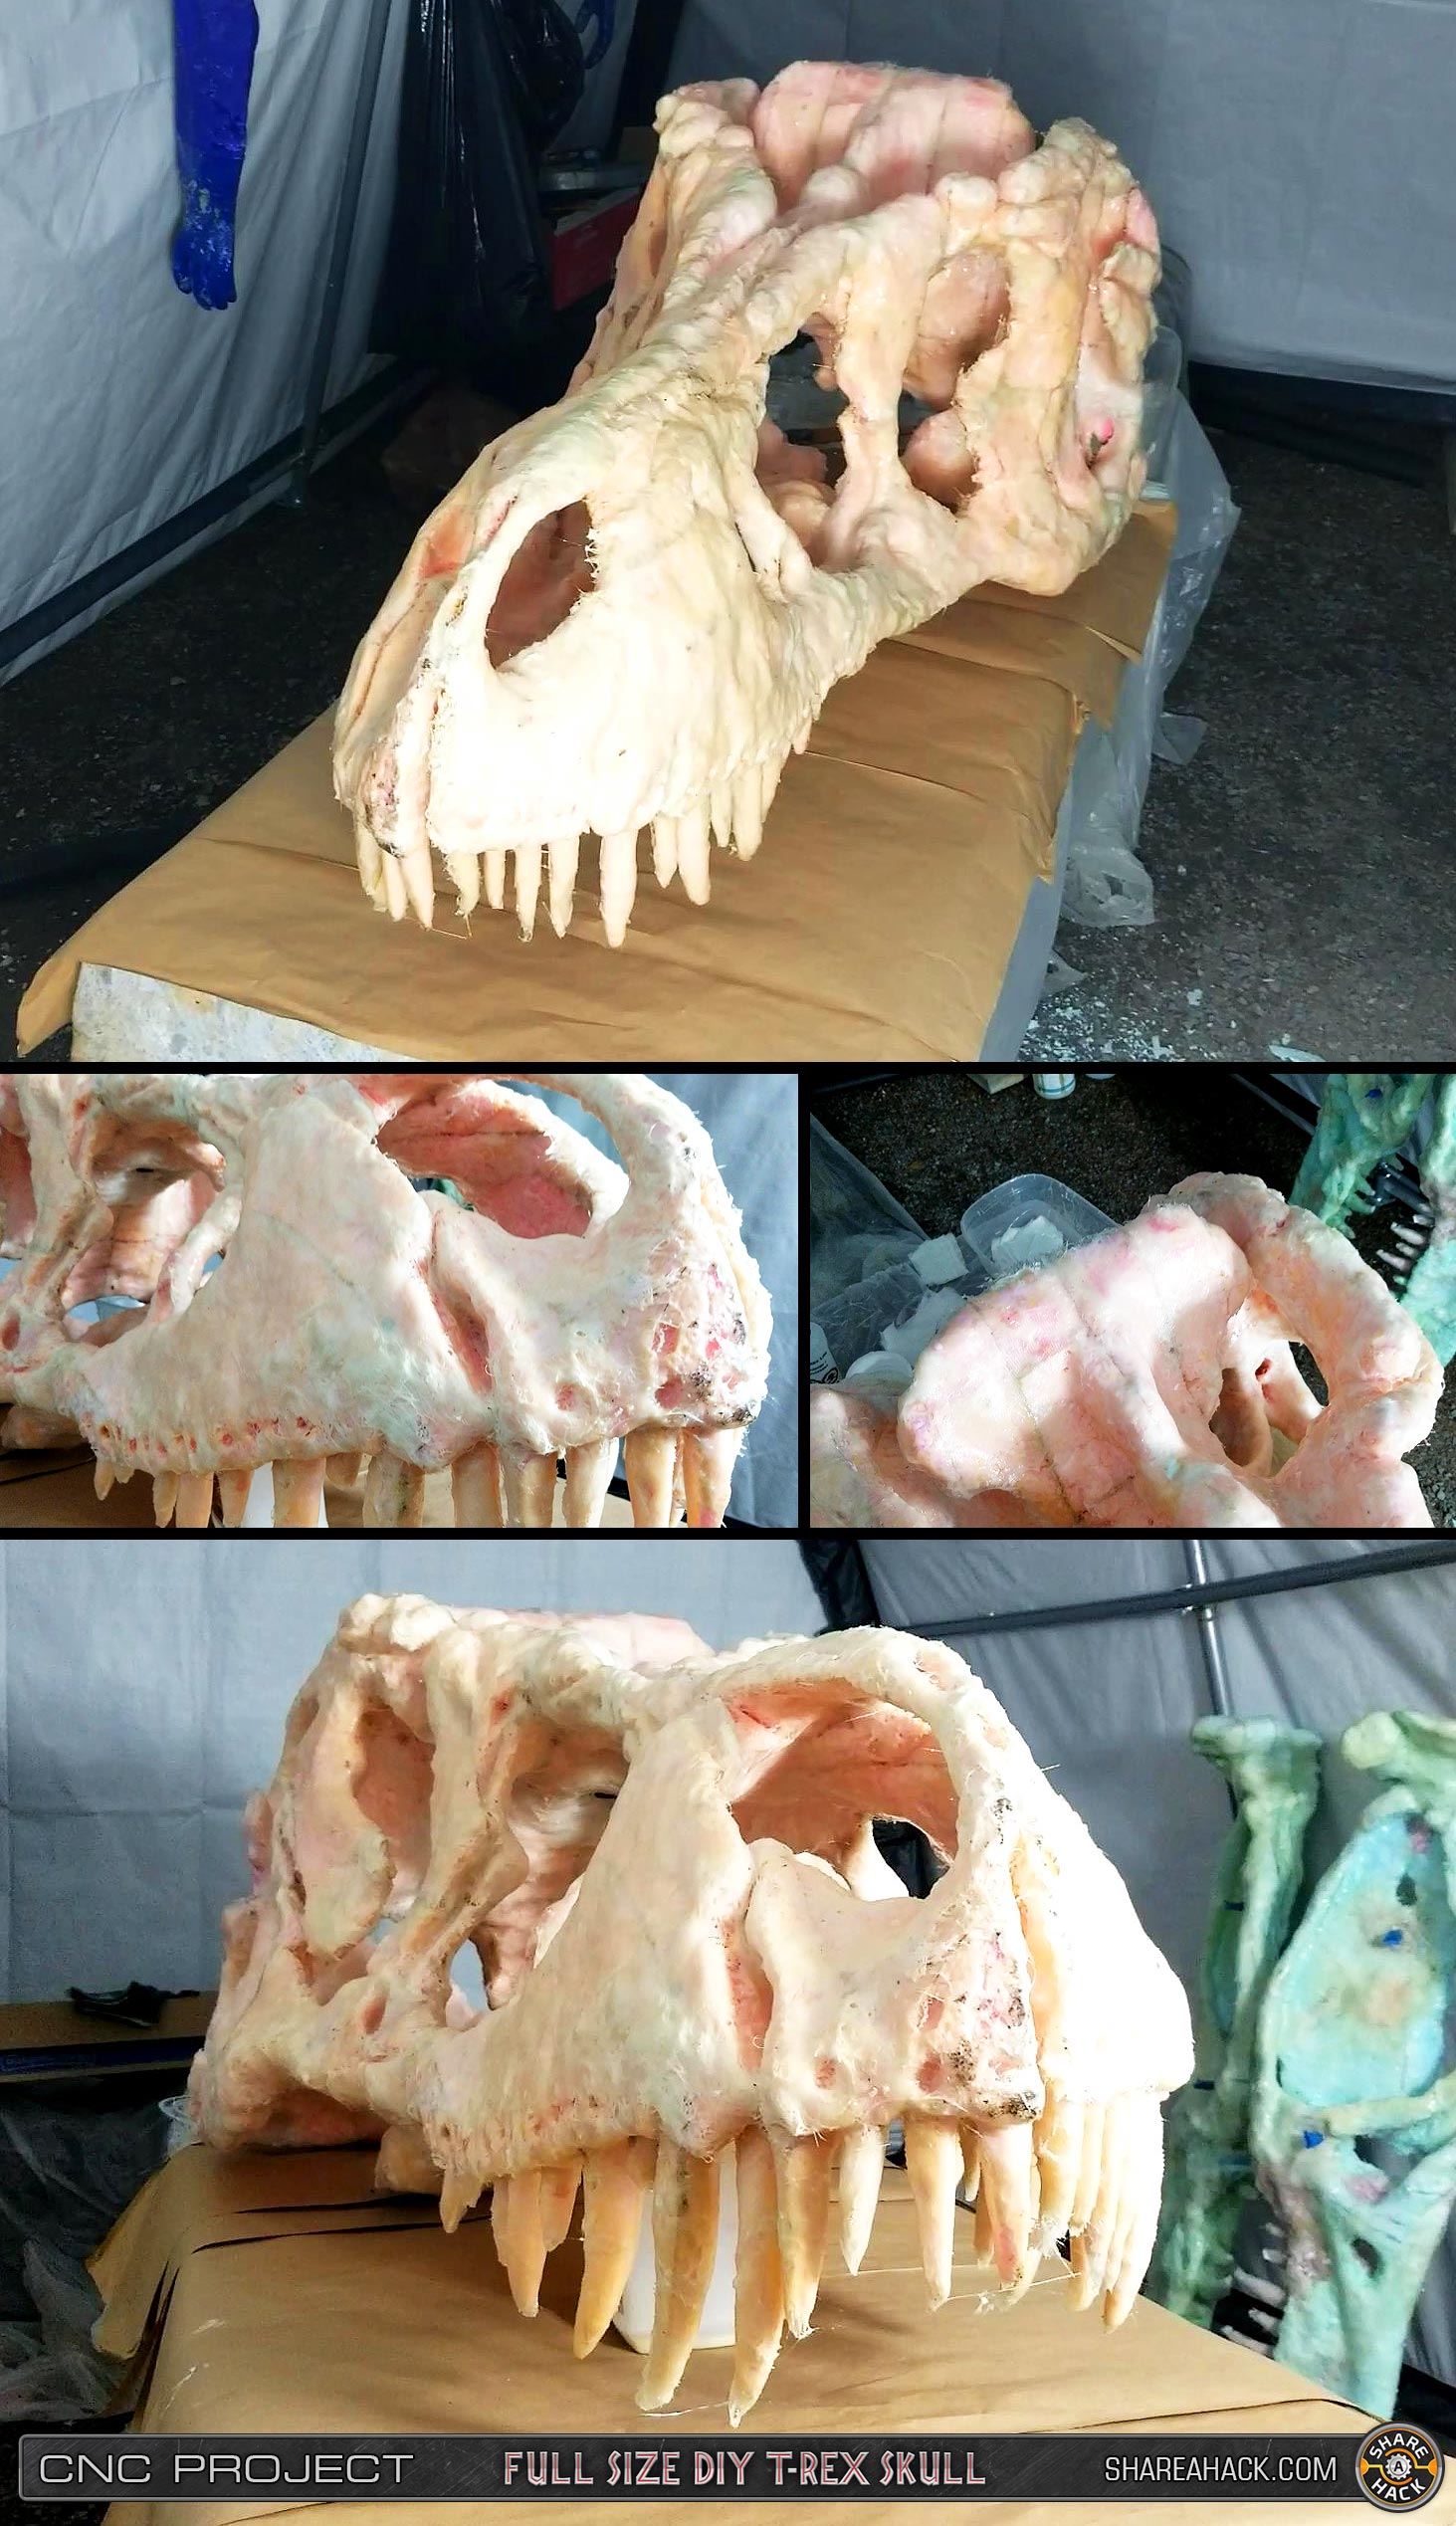 ck_diy-trex-skull-cnc-foam_3dmodel_33-fiberglassed.jpg